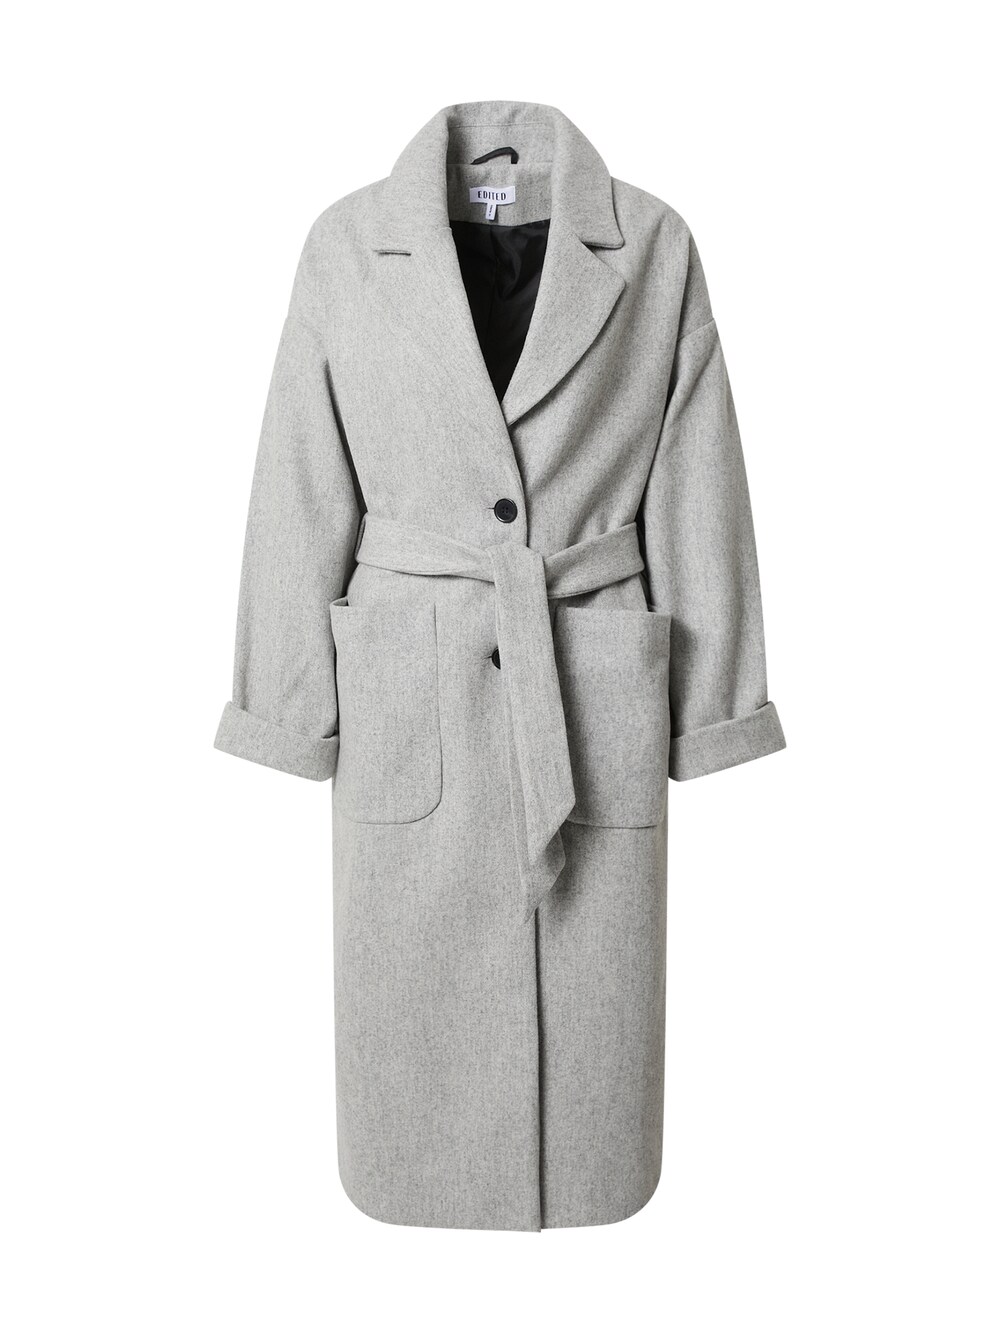 Межсезонное пальто EDITED Santo, пестрый серый межсезонное пальто edited tosca пестрый серый